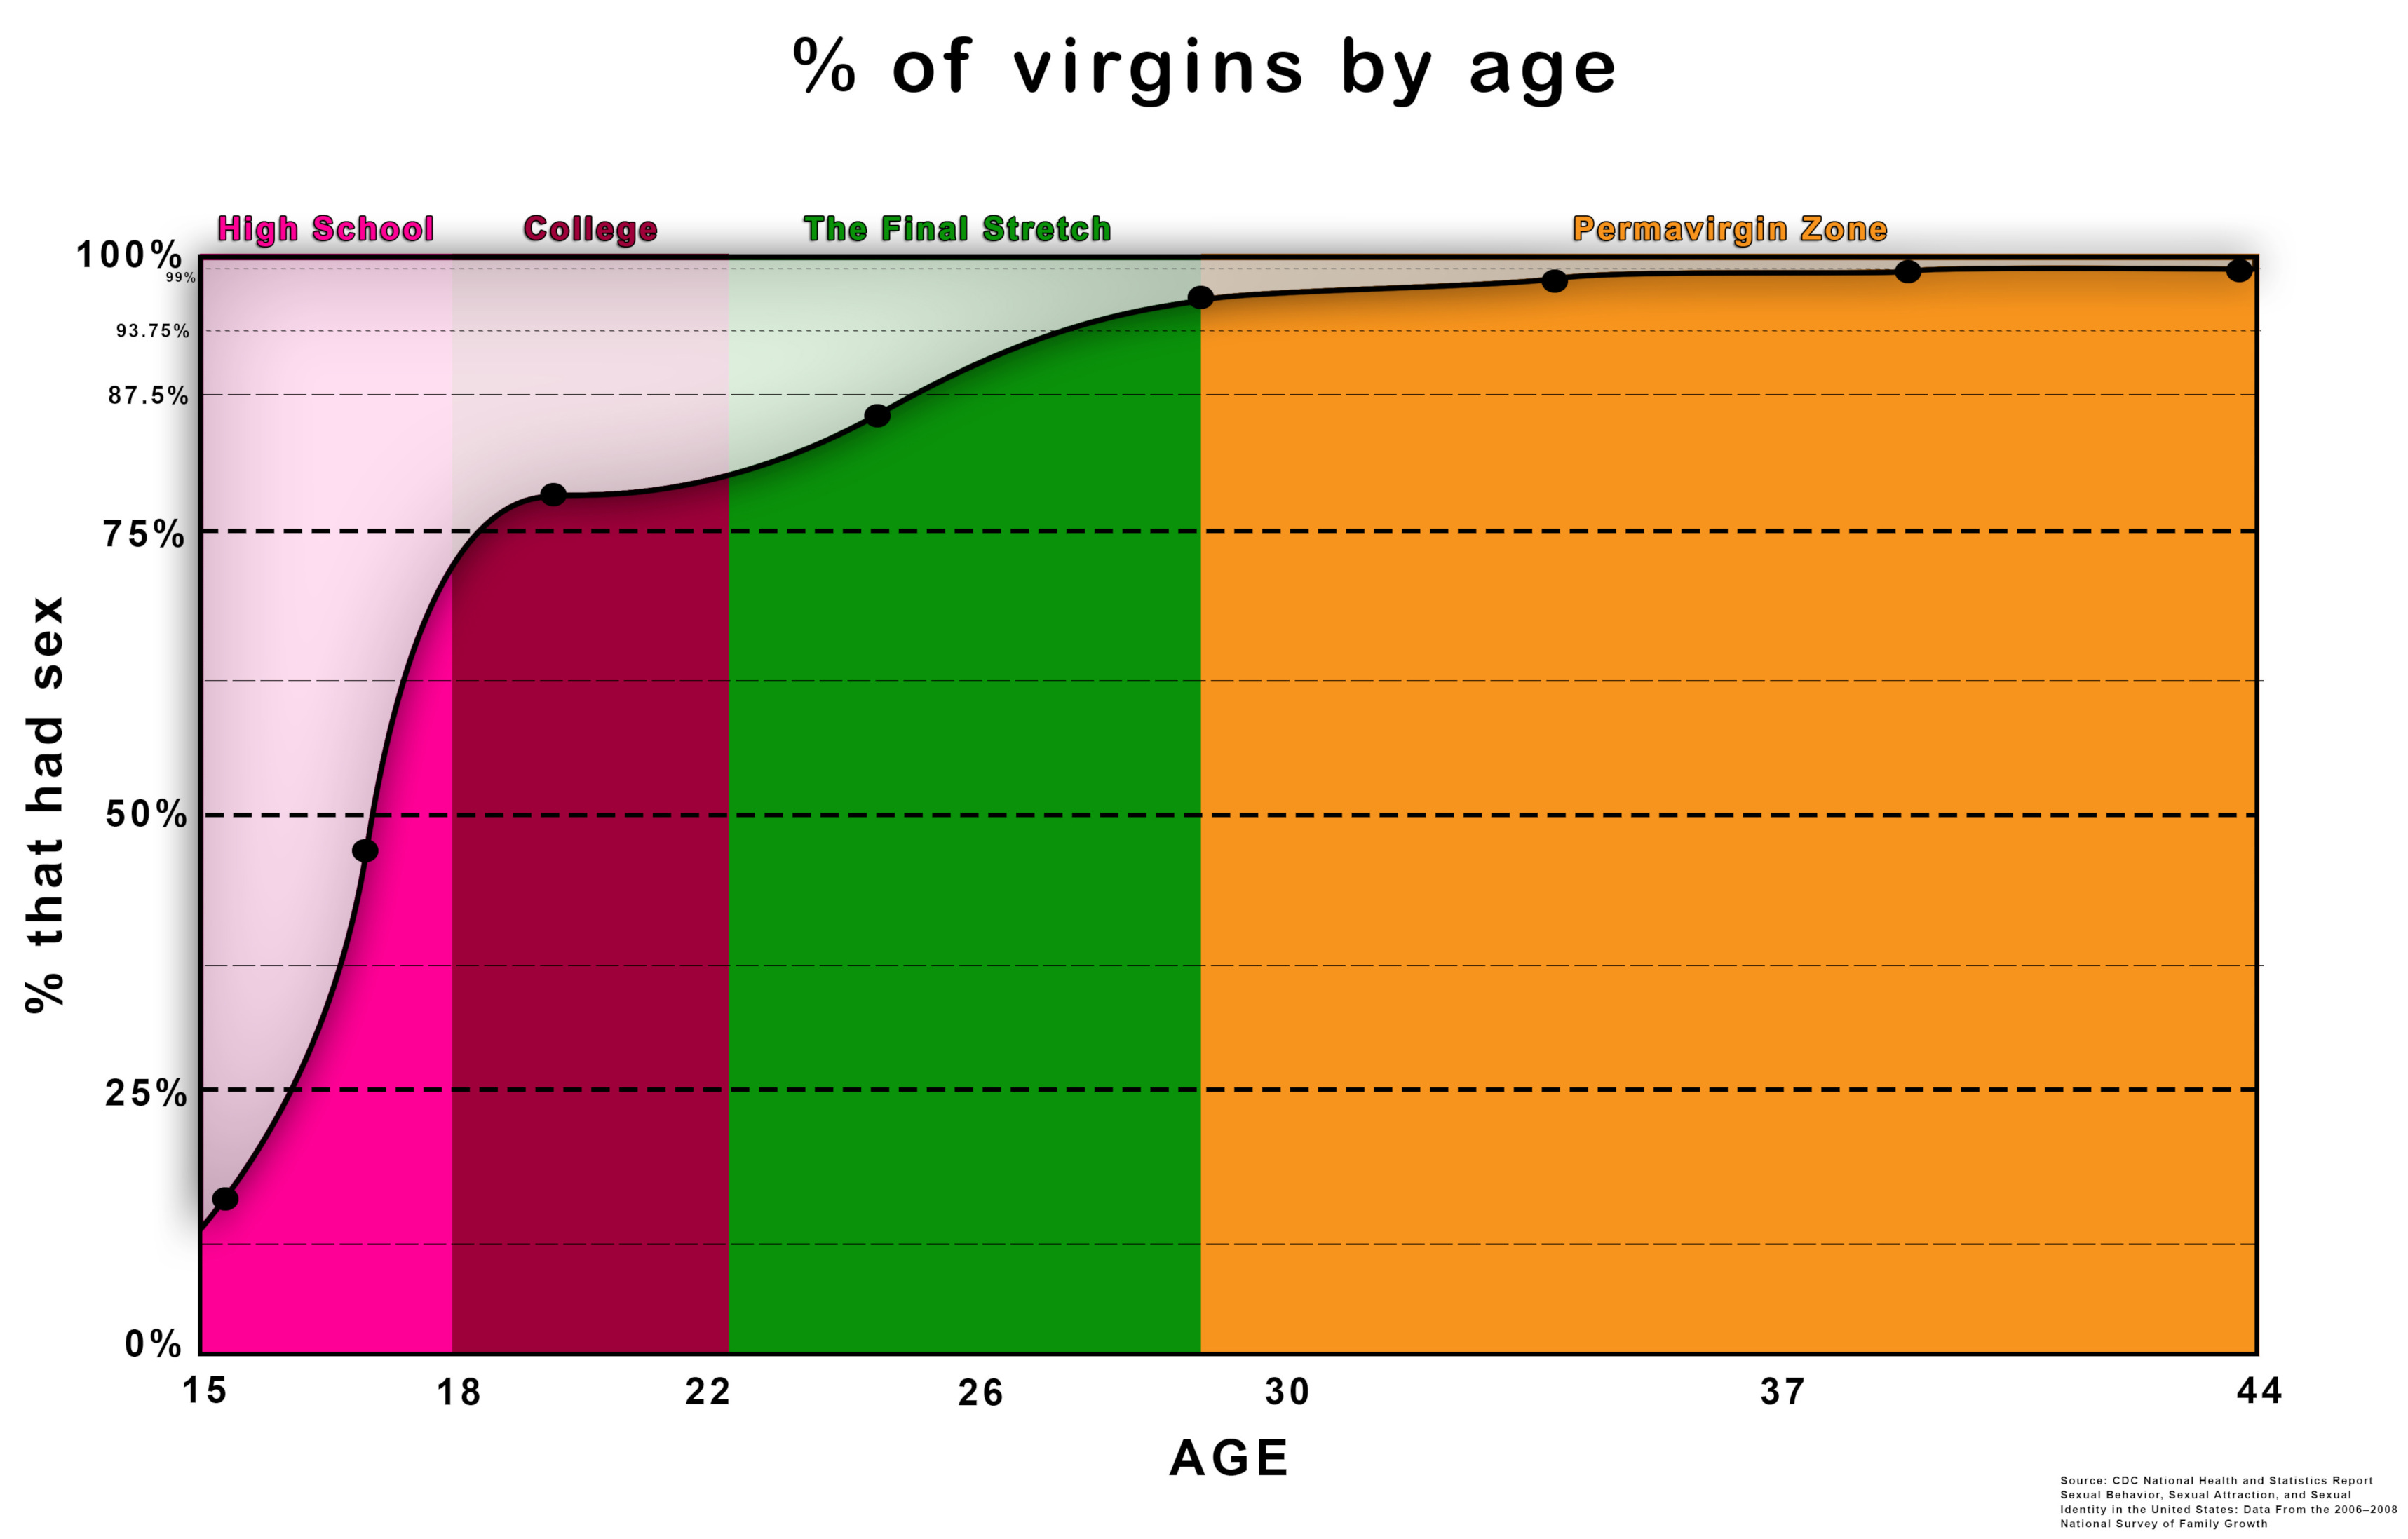 Theories on the importance of mirandas virginity